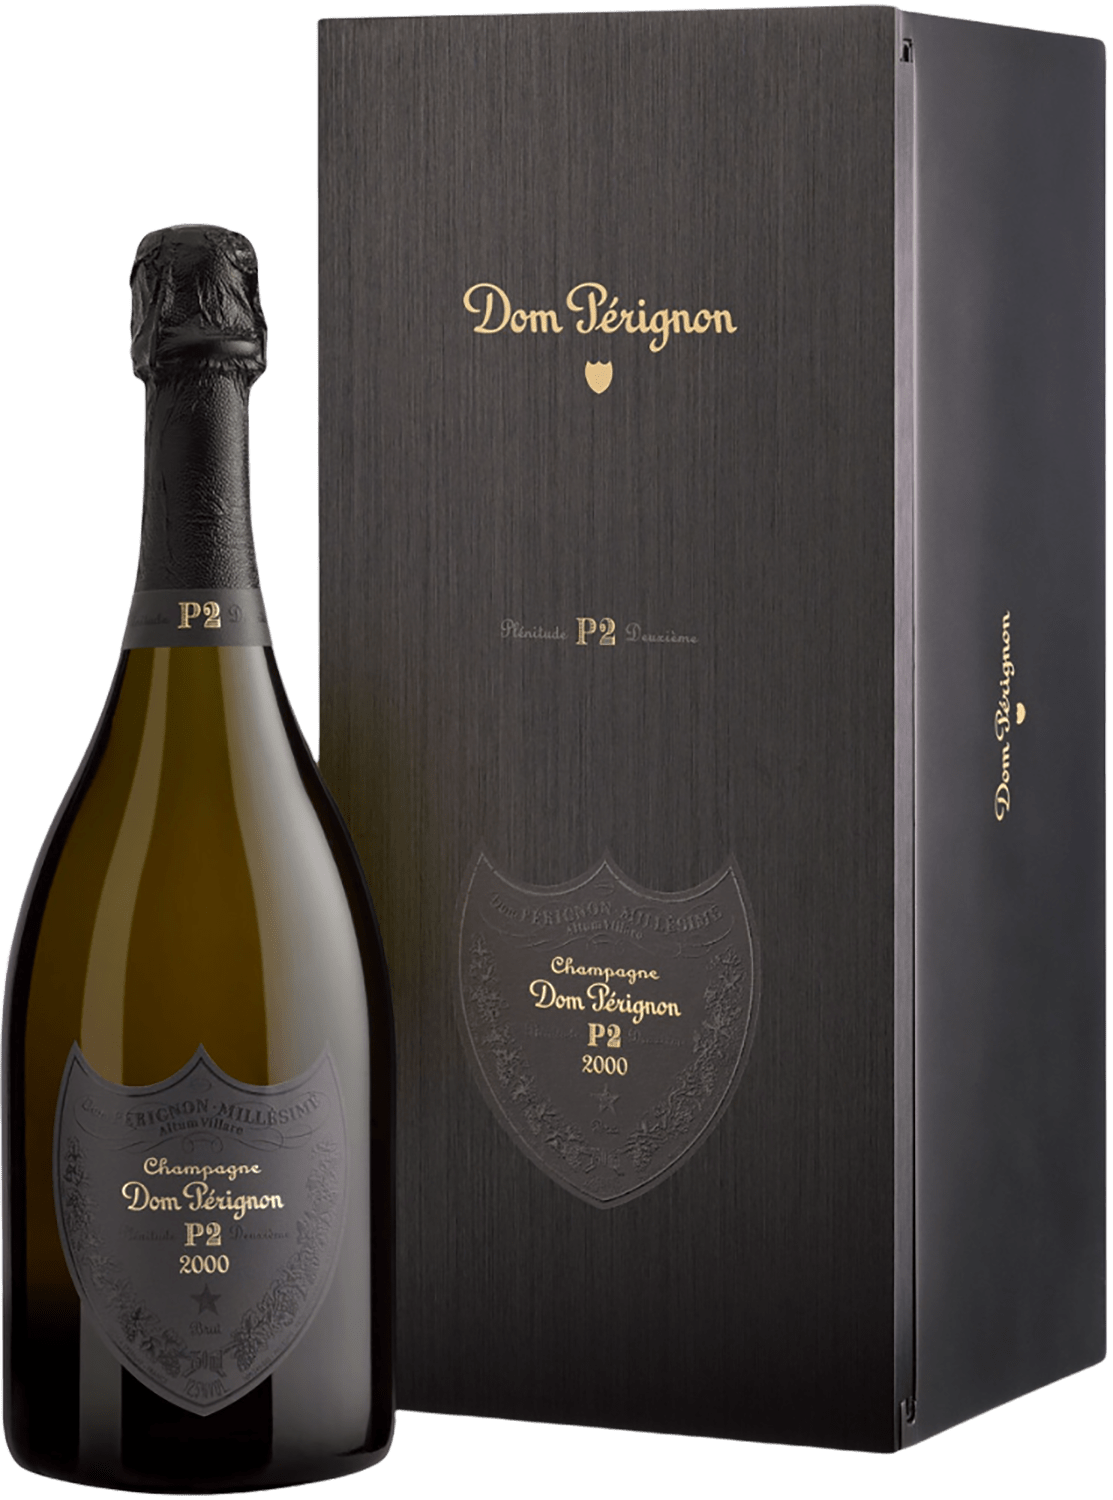 Dom Perignon P2 Vintage 2003 Champagne AOC (gift box)